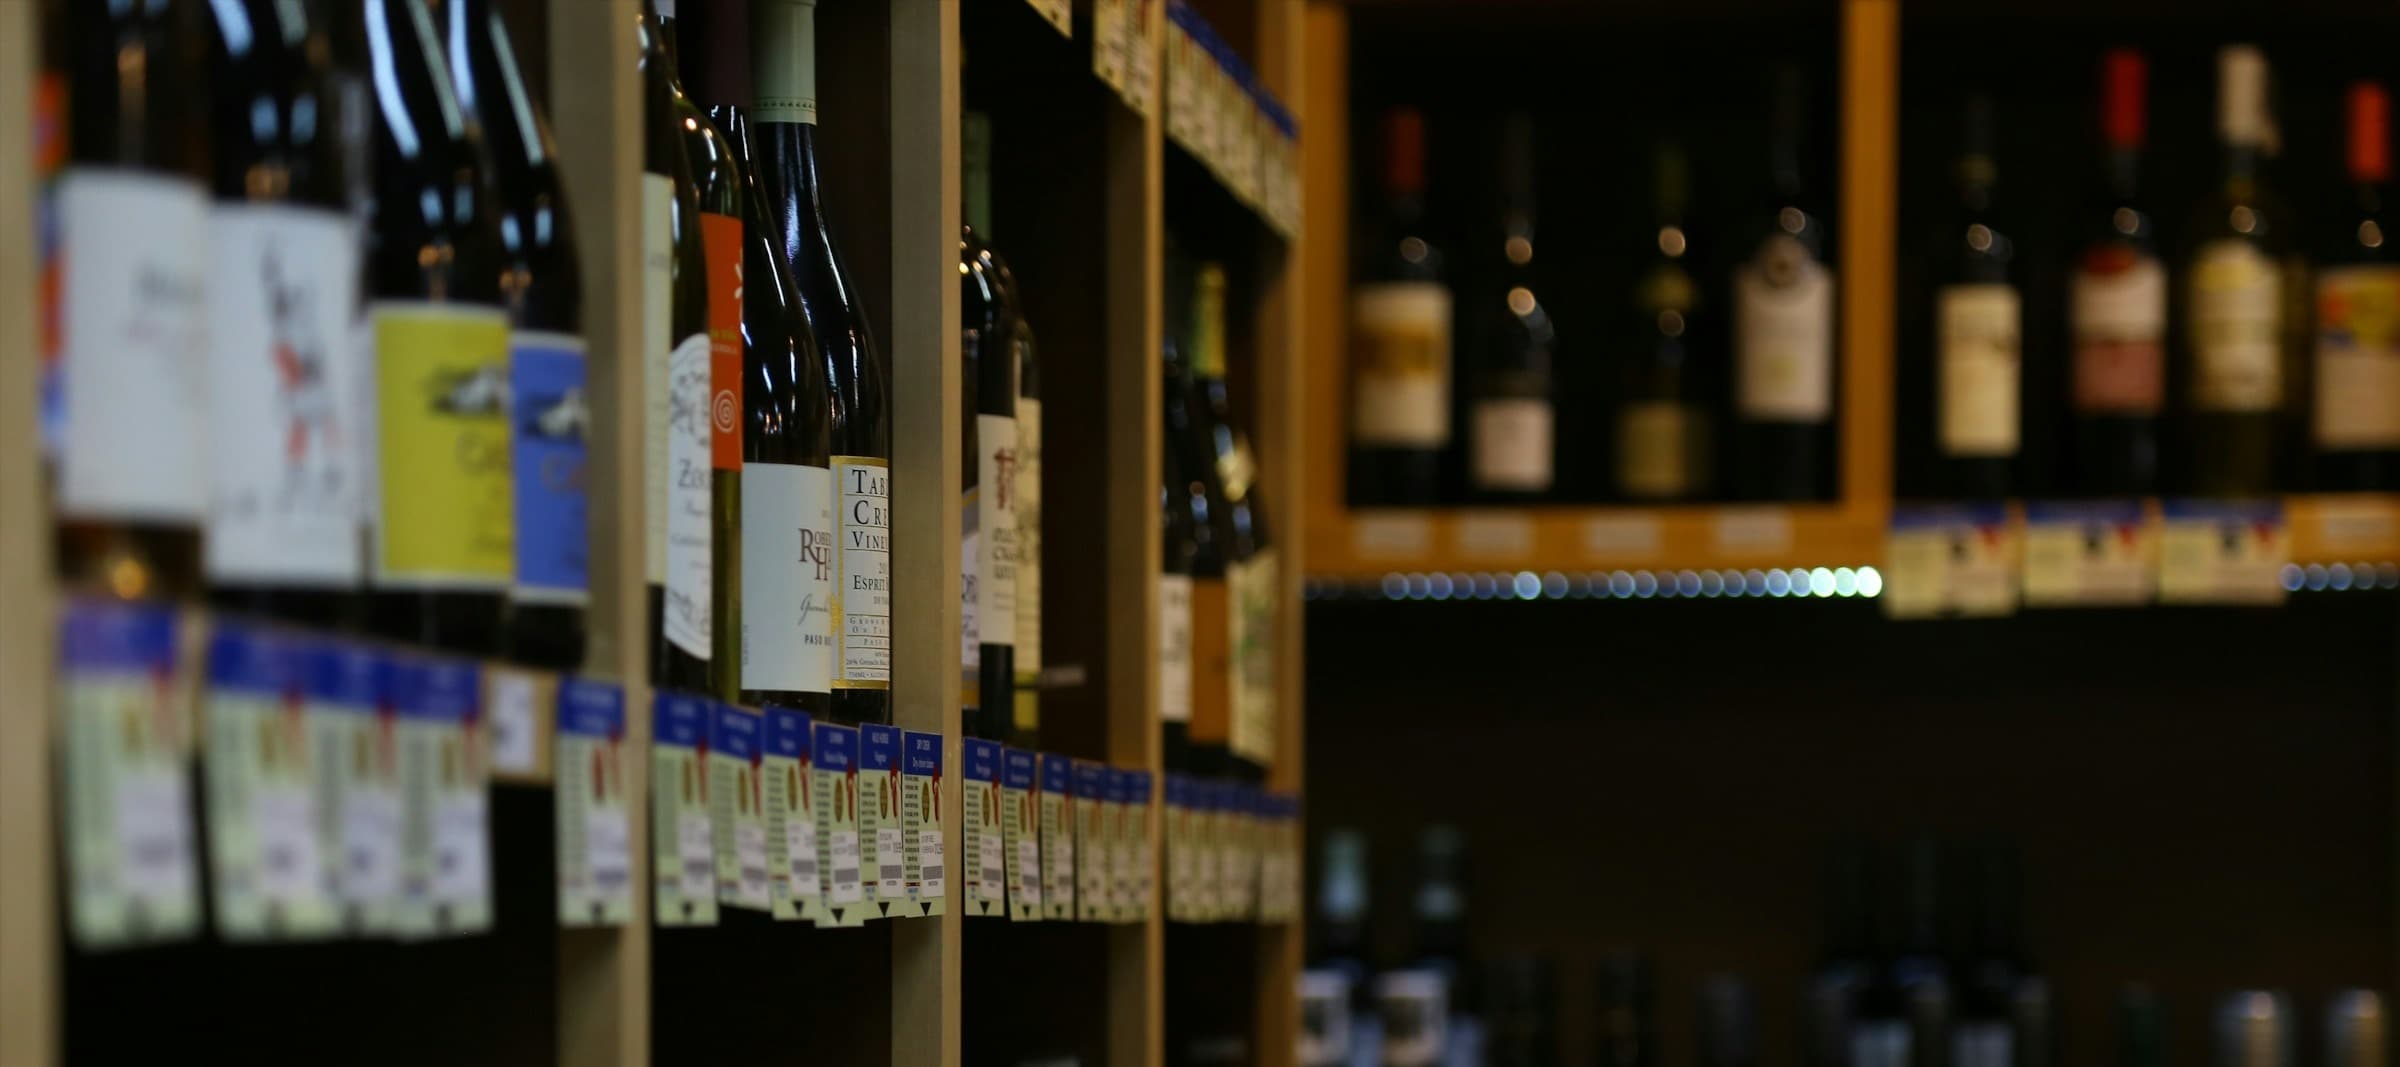 Фото новости: "Импорт вин из европейских стран упал почти на 40%"